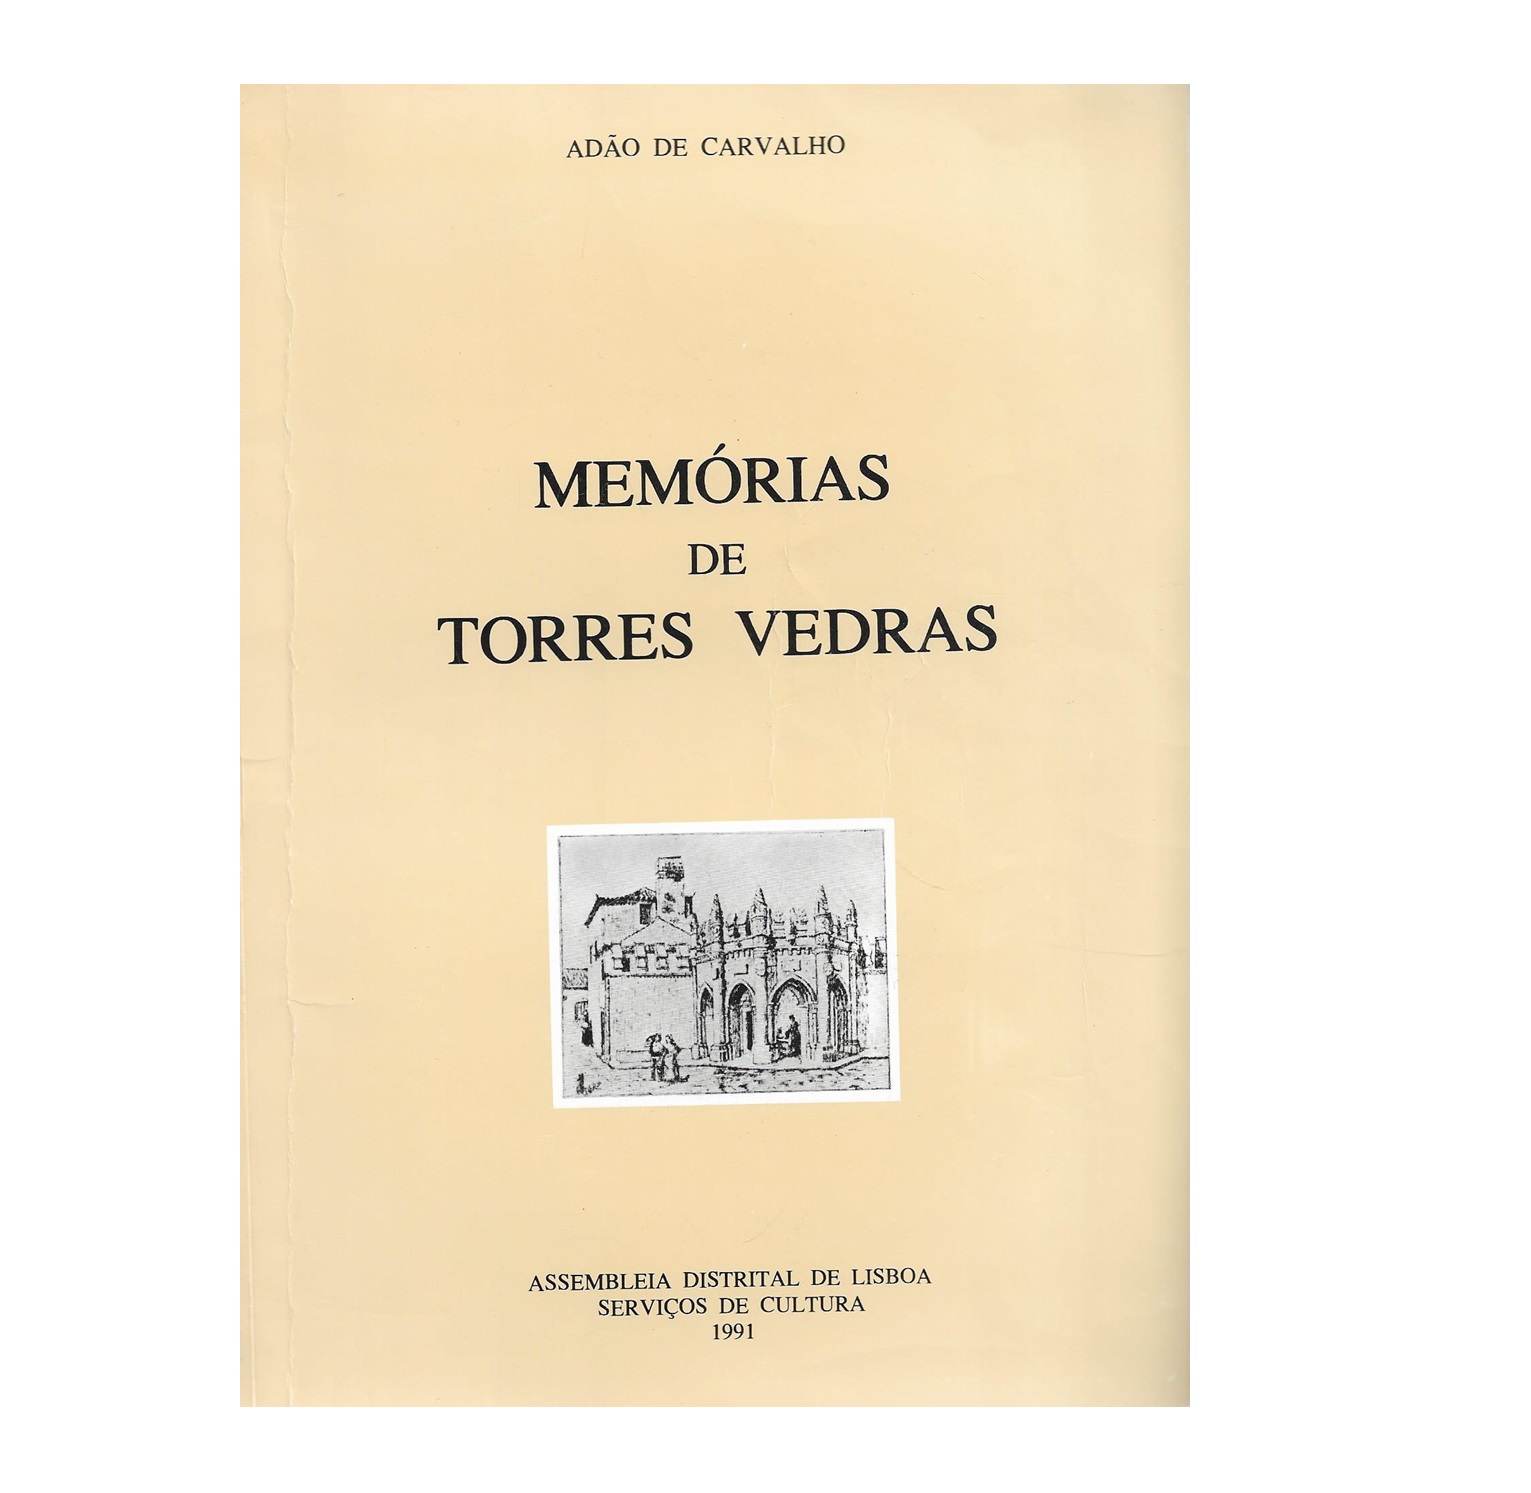 MEMÓRIAS DE TORRES VEDRAS